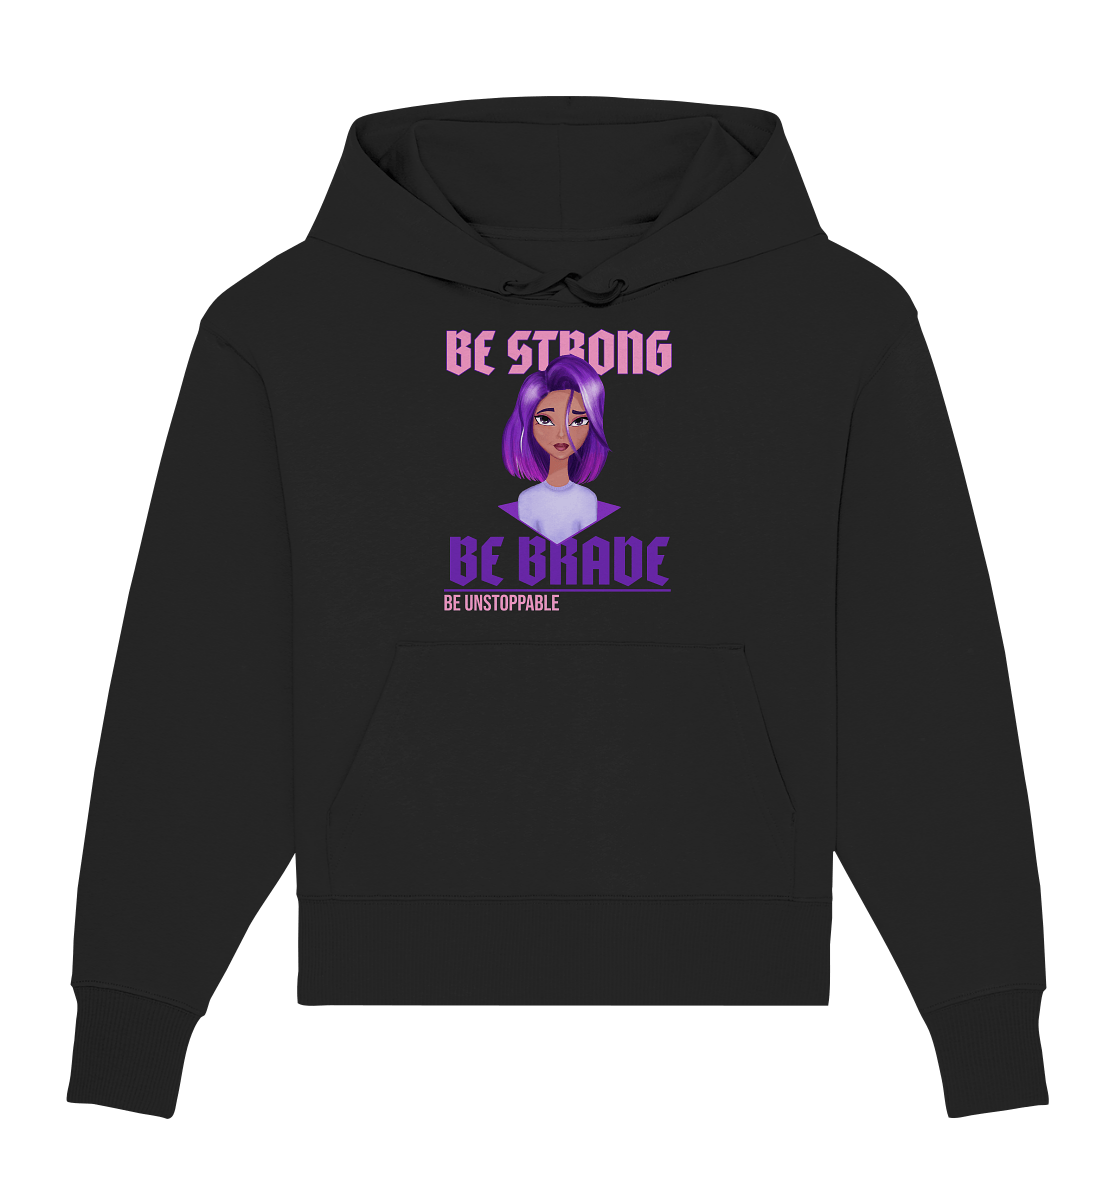 Damen Oversize Kapuzenpullover in weiß mit handgezeichneten Cartoon mit lila-violett Ombré Haarfarbe und Beschriftung "be strong be brave be unstoppable"  in schwarz. Bloominic hoodie mit Cartoon